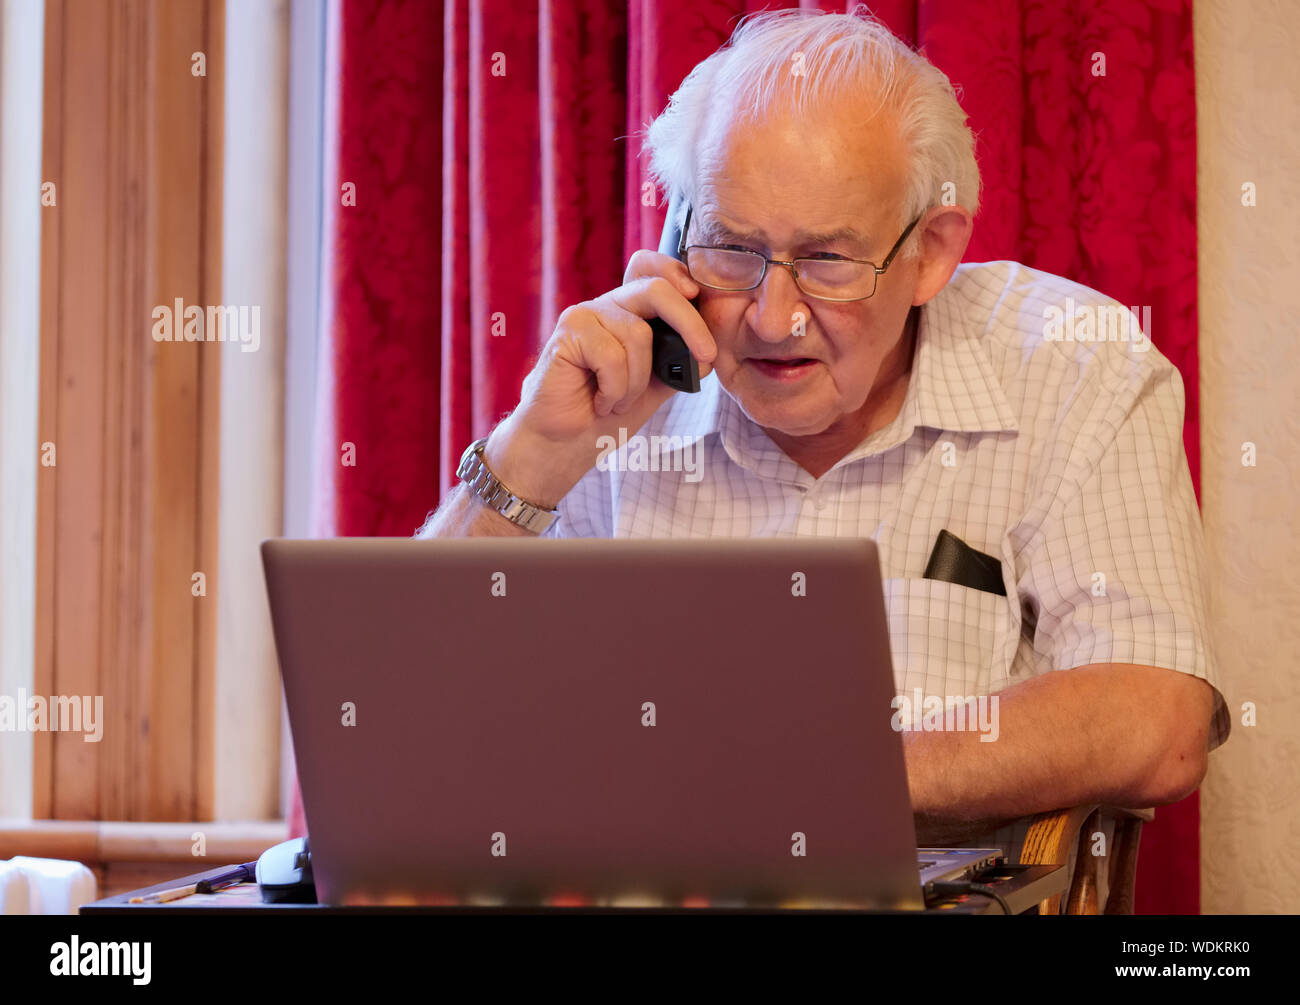 Vieux personnes âgées senior man on phone at laptop computer à risque aux cyberattaques et fraude bancaire en ligne Banque D'Images